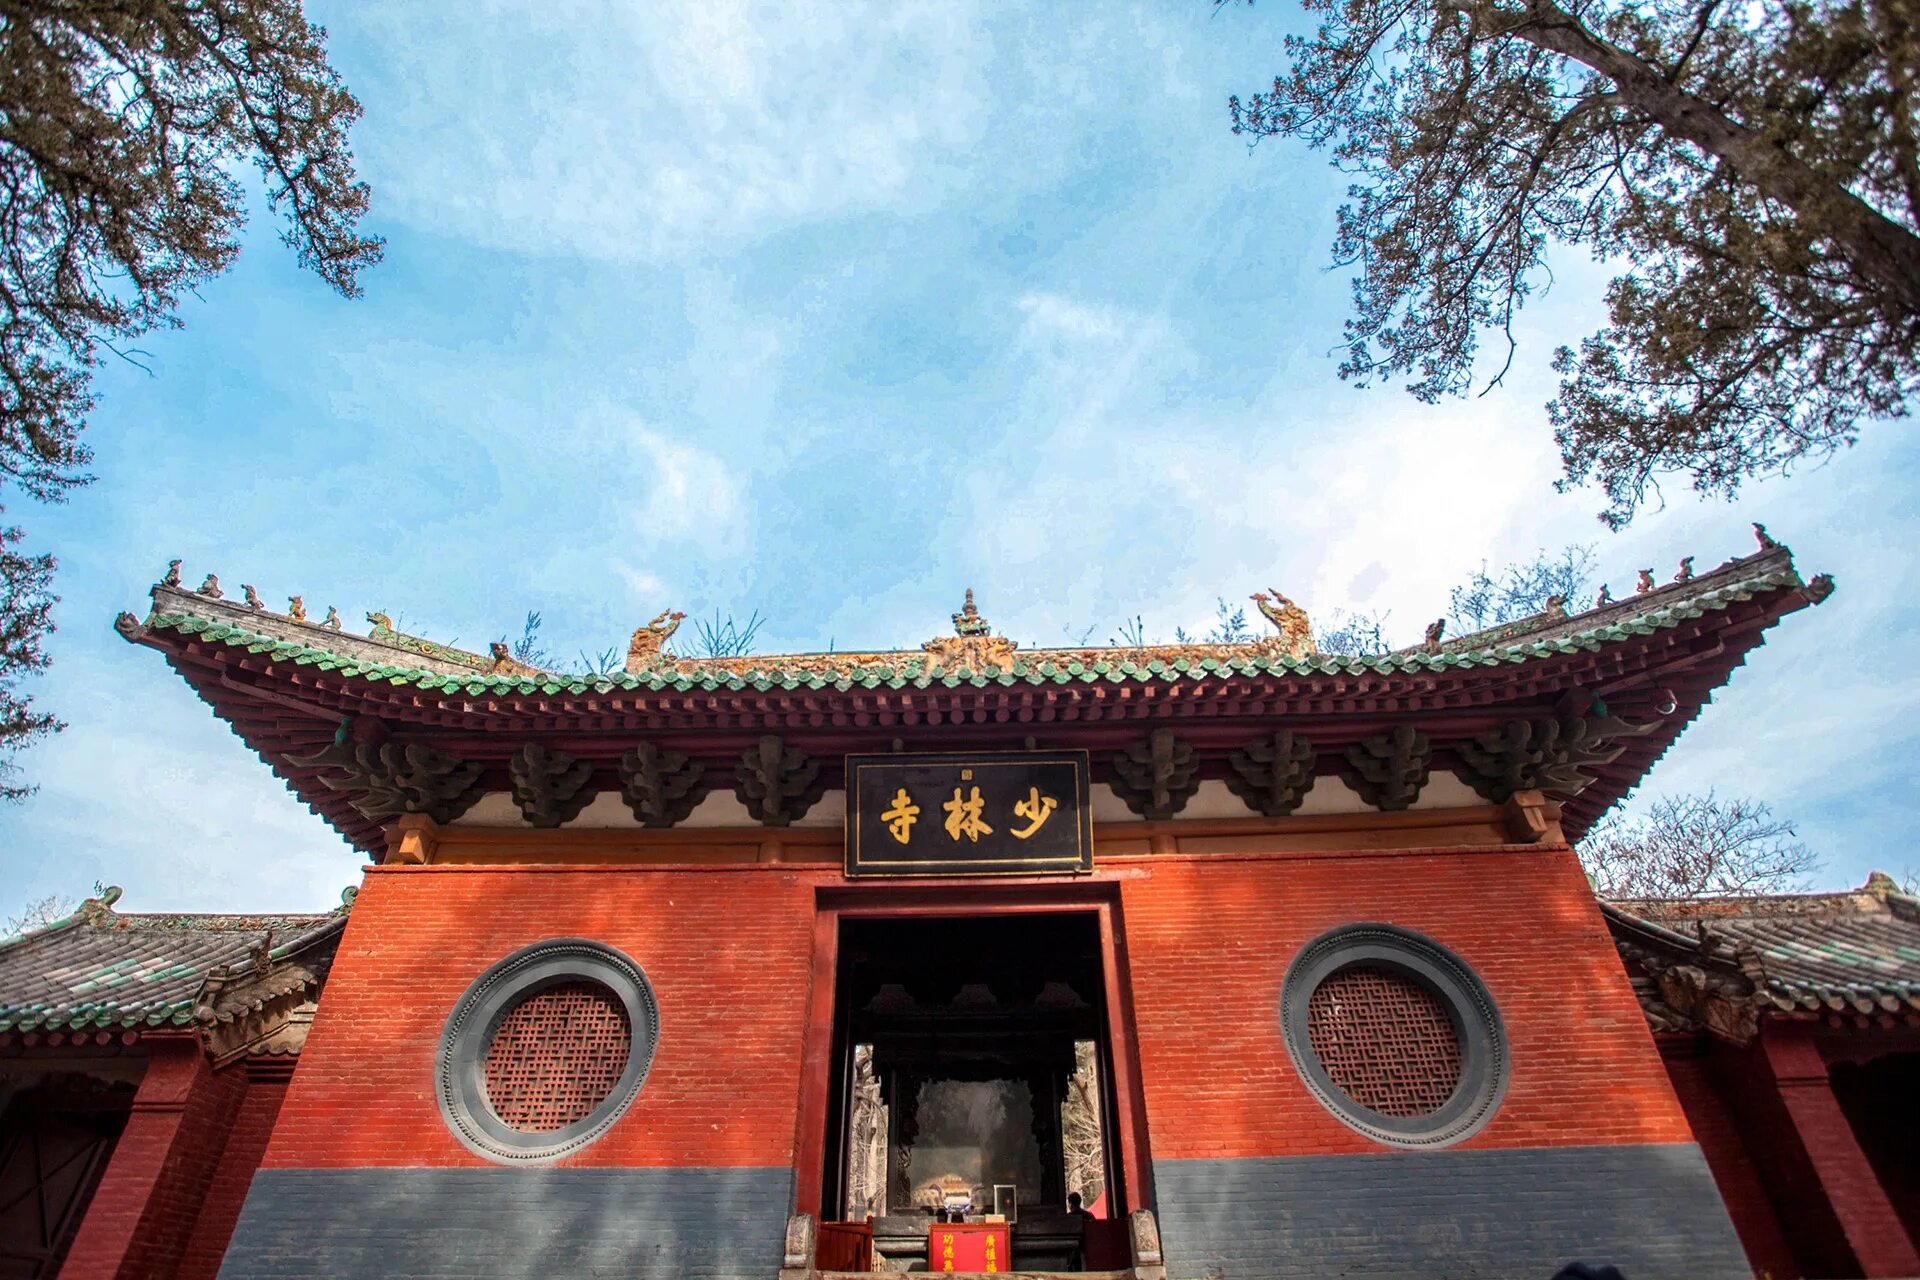 Shaolin temple. Монастырь Шаолинь Хэнань. Храм Шаолинь Лоян. Шаолинь Чжэнчжоу. Монастырь Шаолинь Чжэнчжоу.